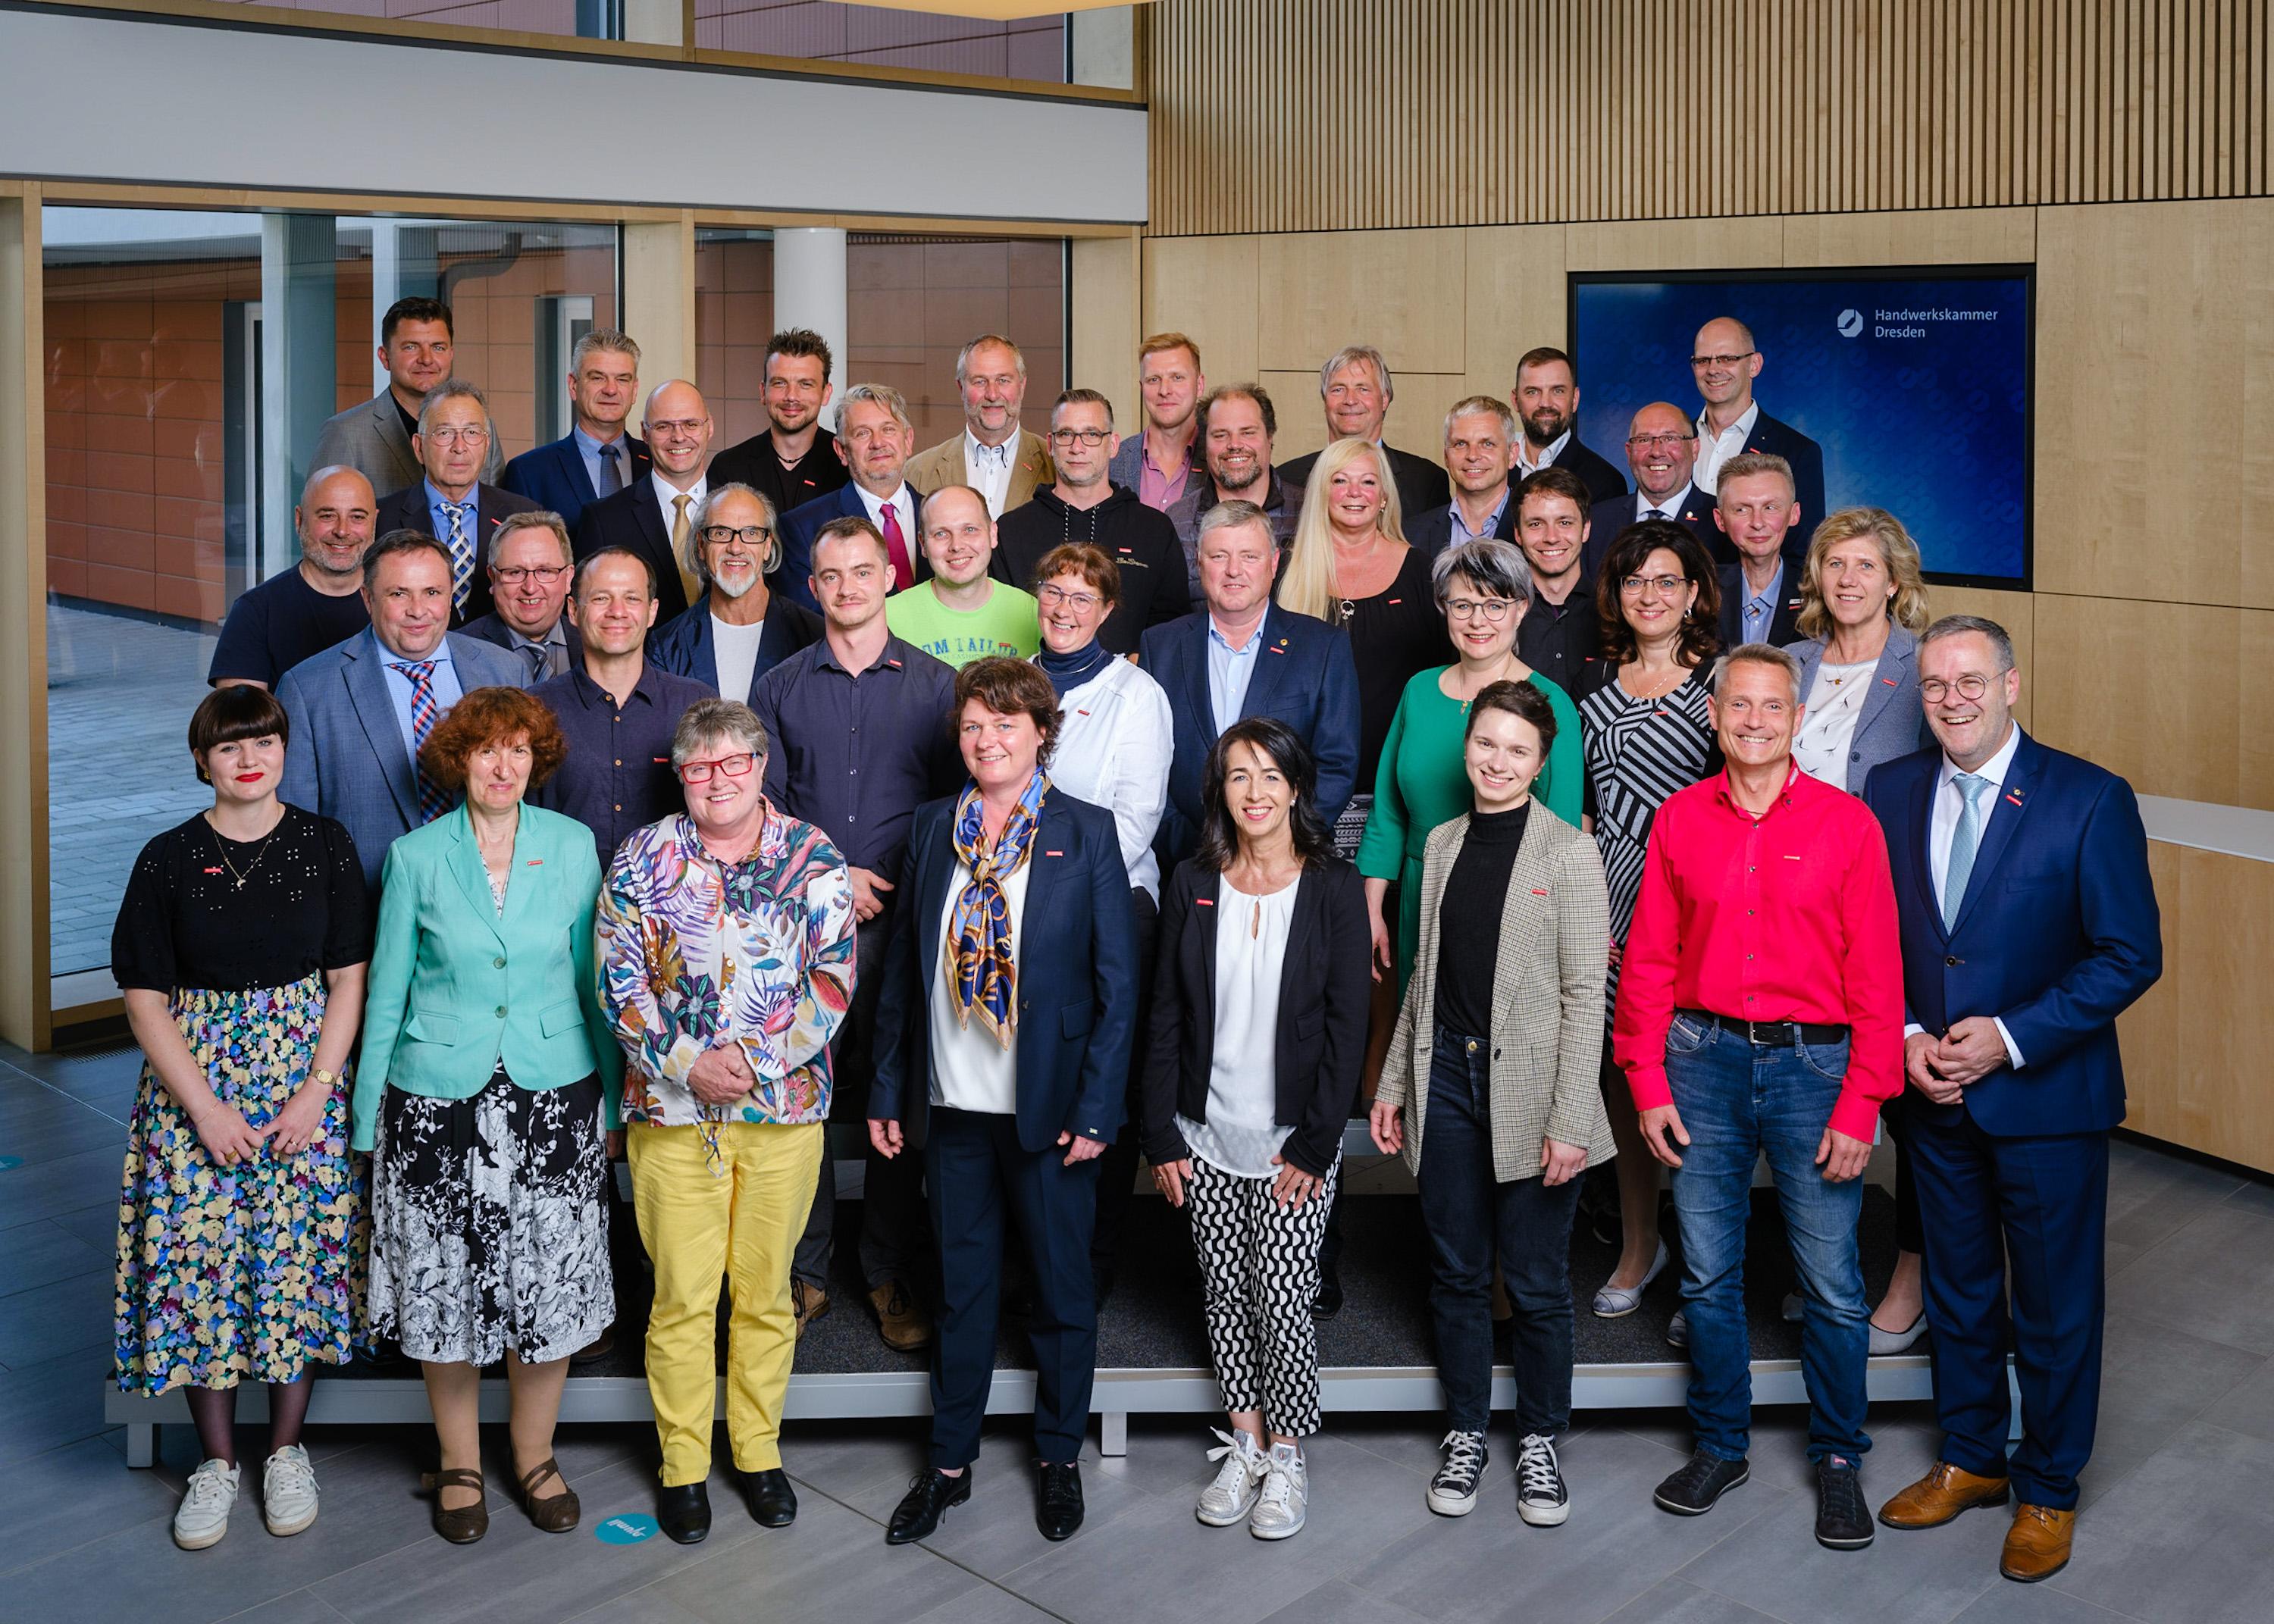 Gruppenbild der Vollversammlung der Handwerkskammer Dresden 2022 bis 2027